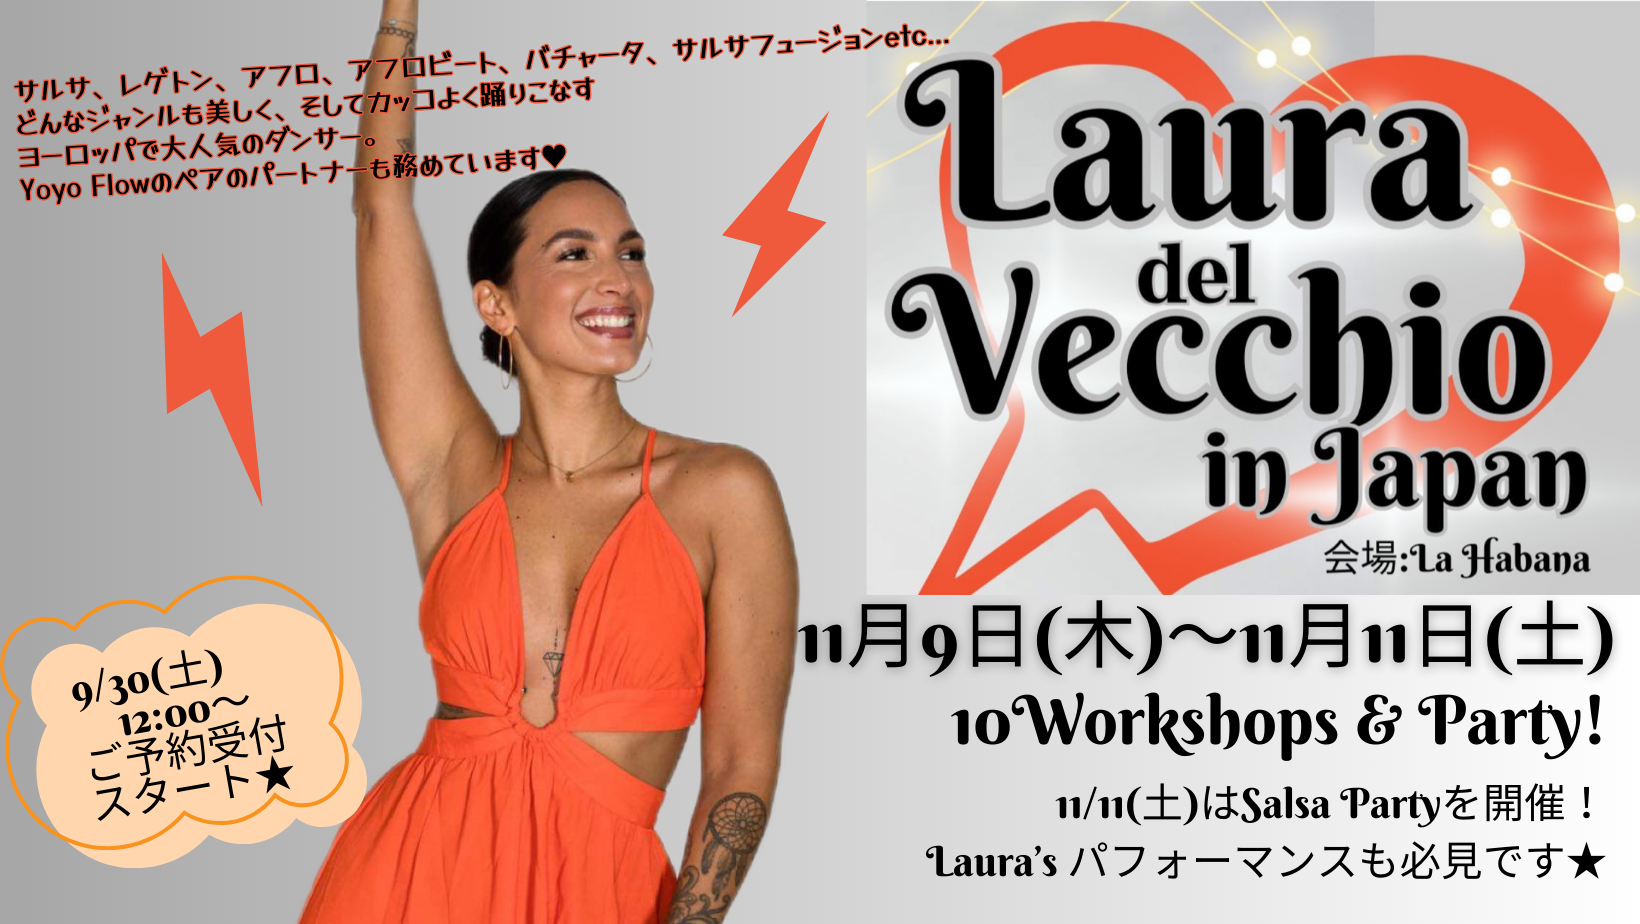 11月9日(木)～11月11日(土) Laura del Vecchio in Japan / 10 Workshops & Party!